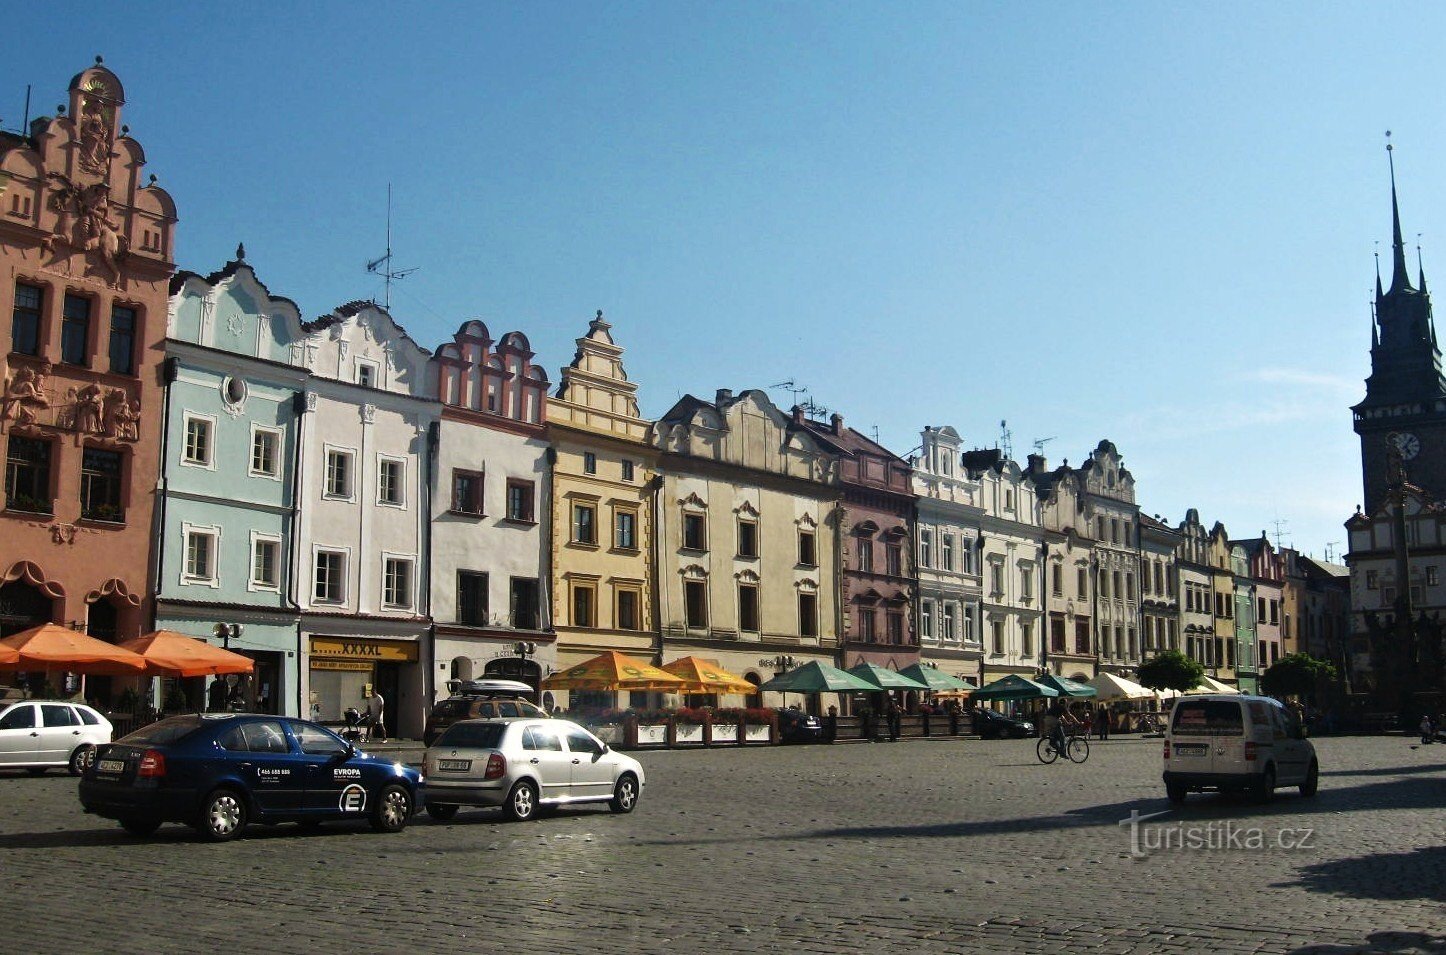 Bezoek aan Pardubice